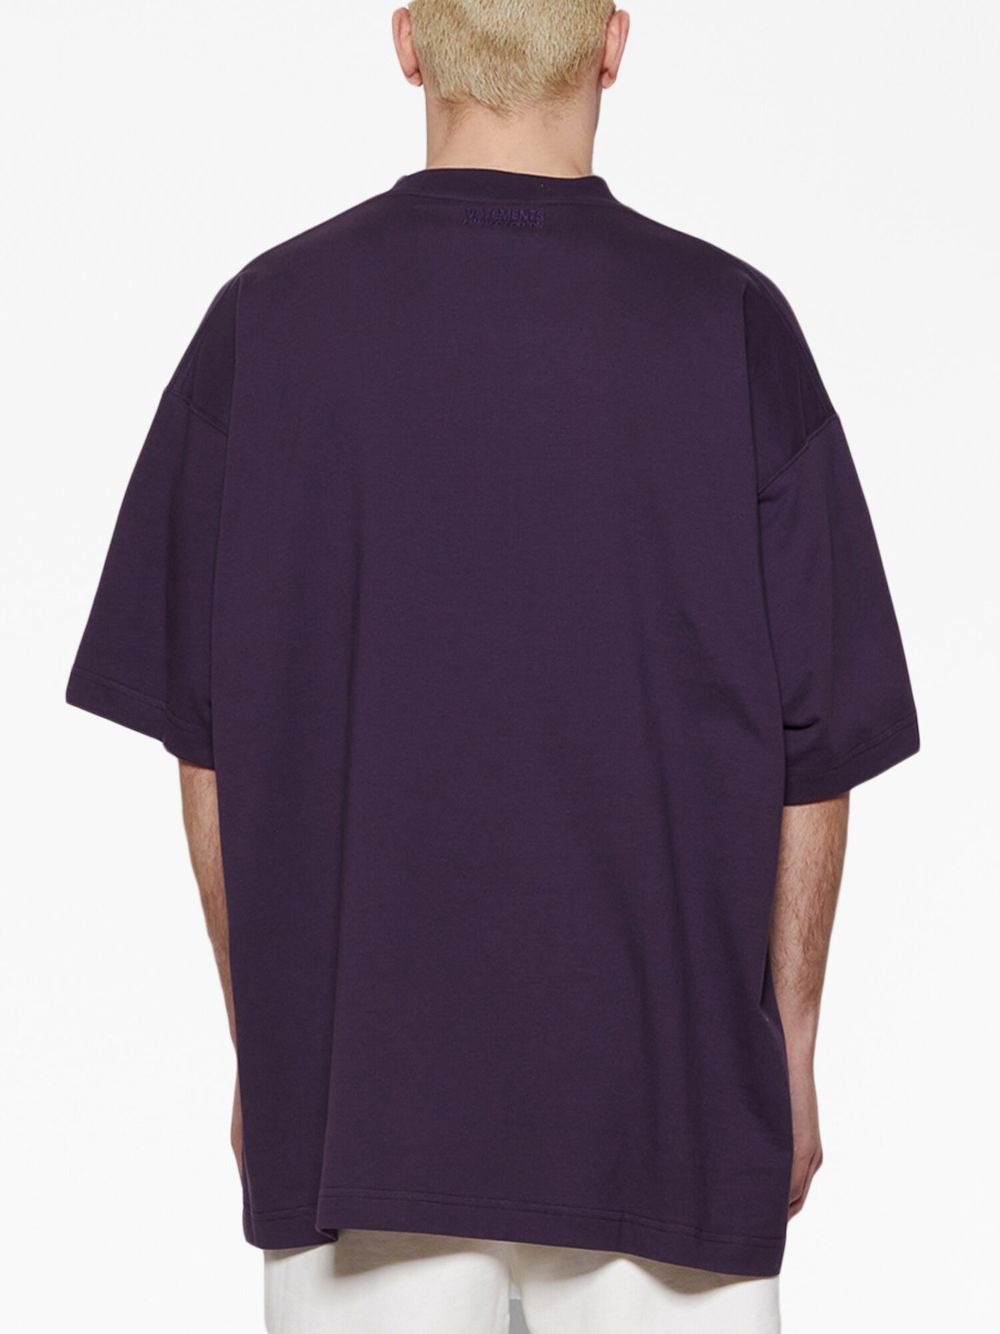 purple paris t-shirt